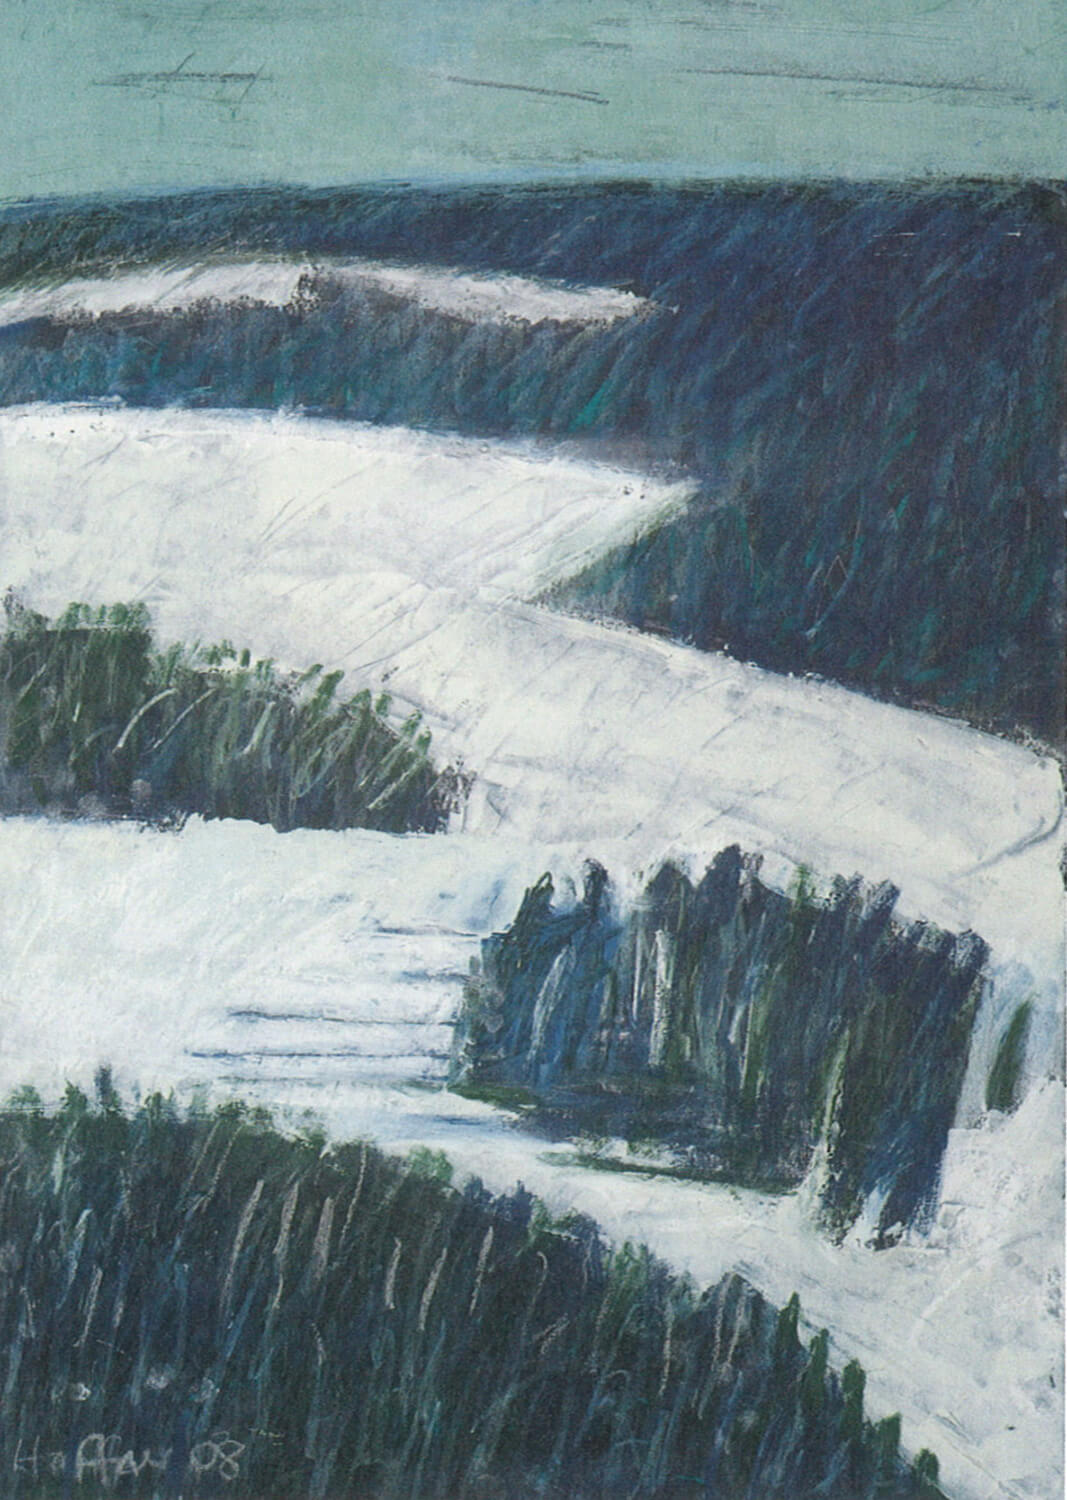 Sarah Haffner, Schnee, 2008, Tempera, Ölkreide auf Karton, 70 x 50 cm